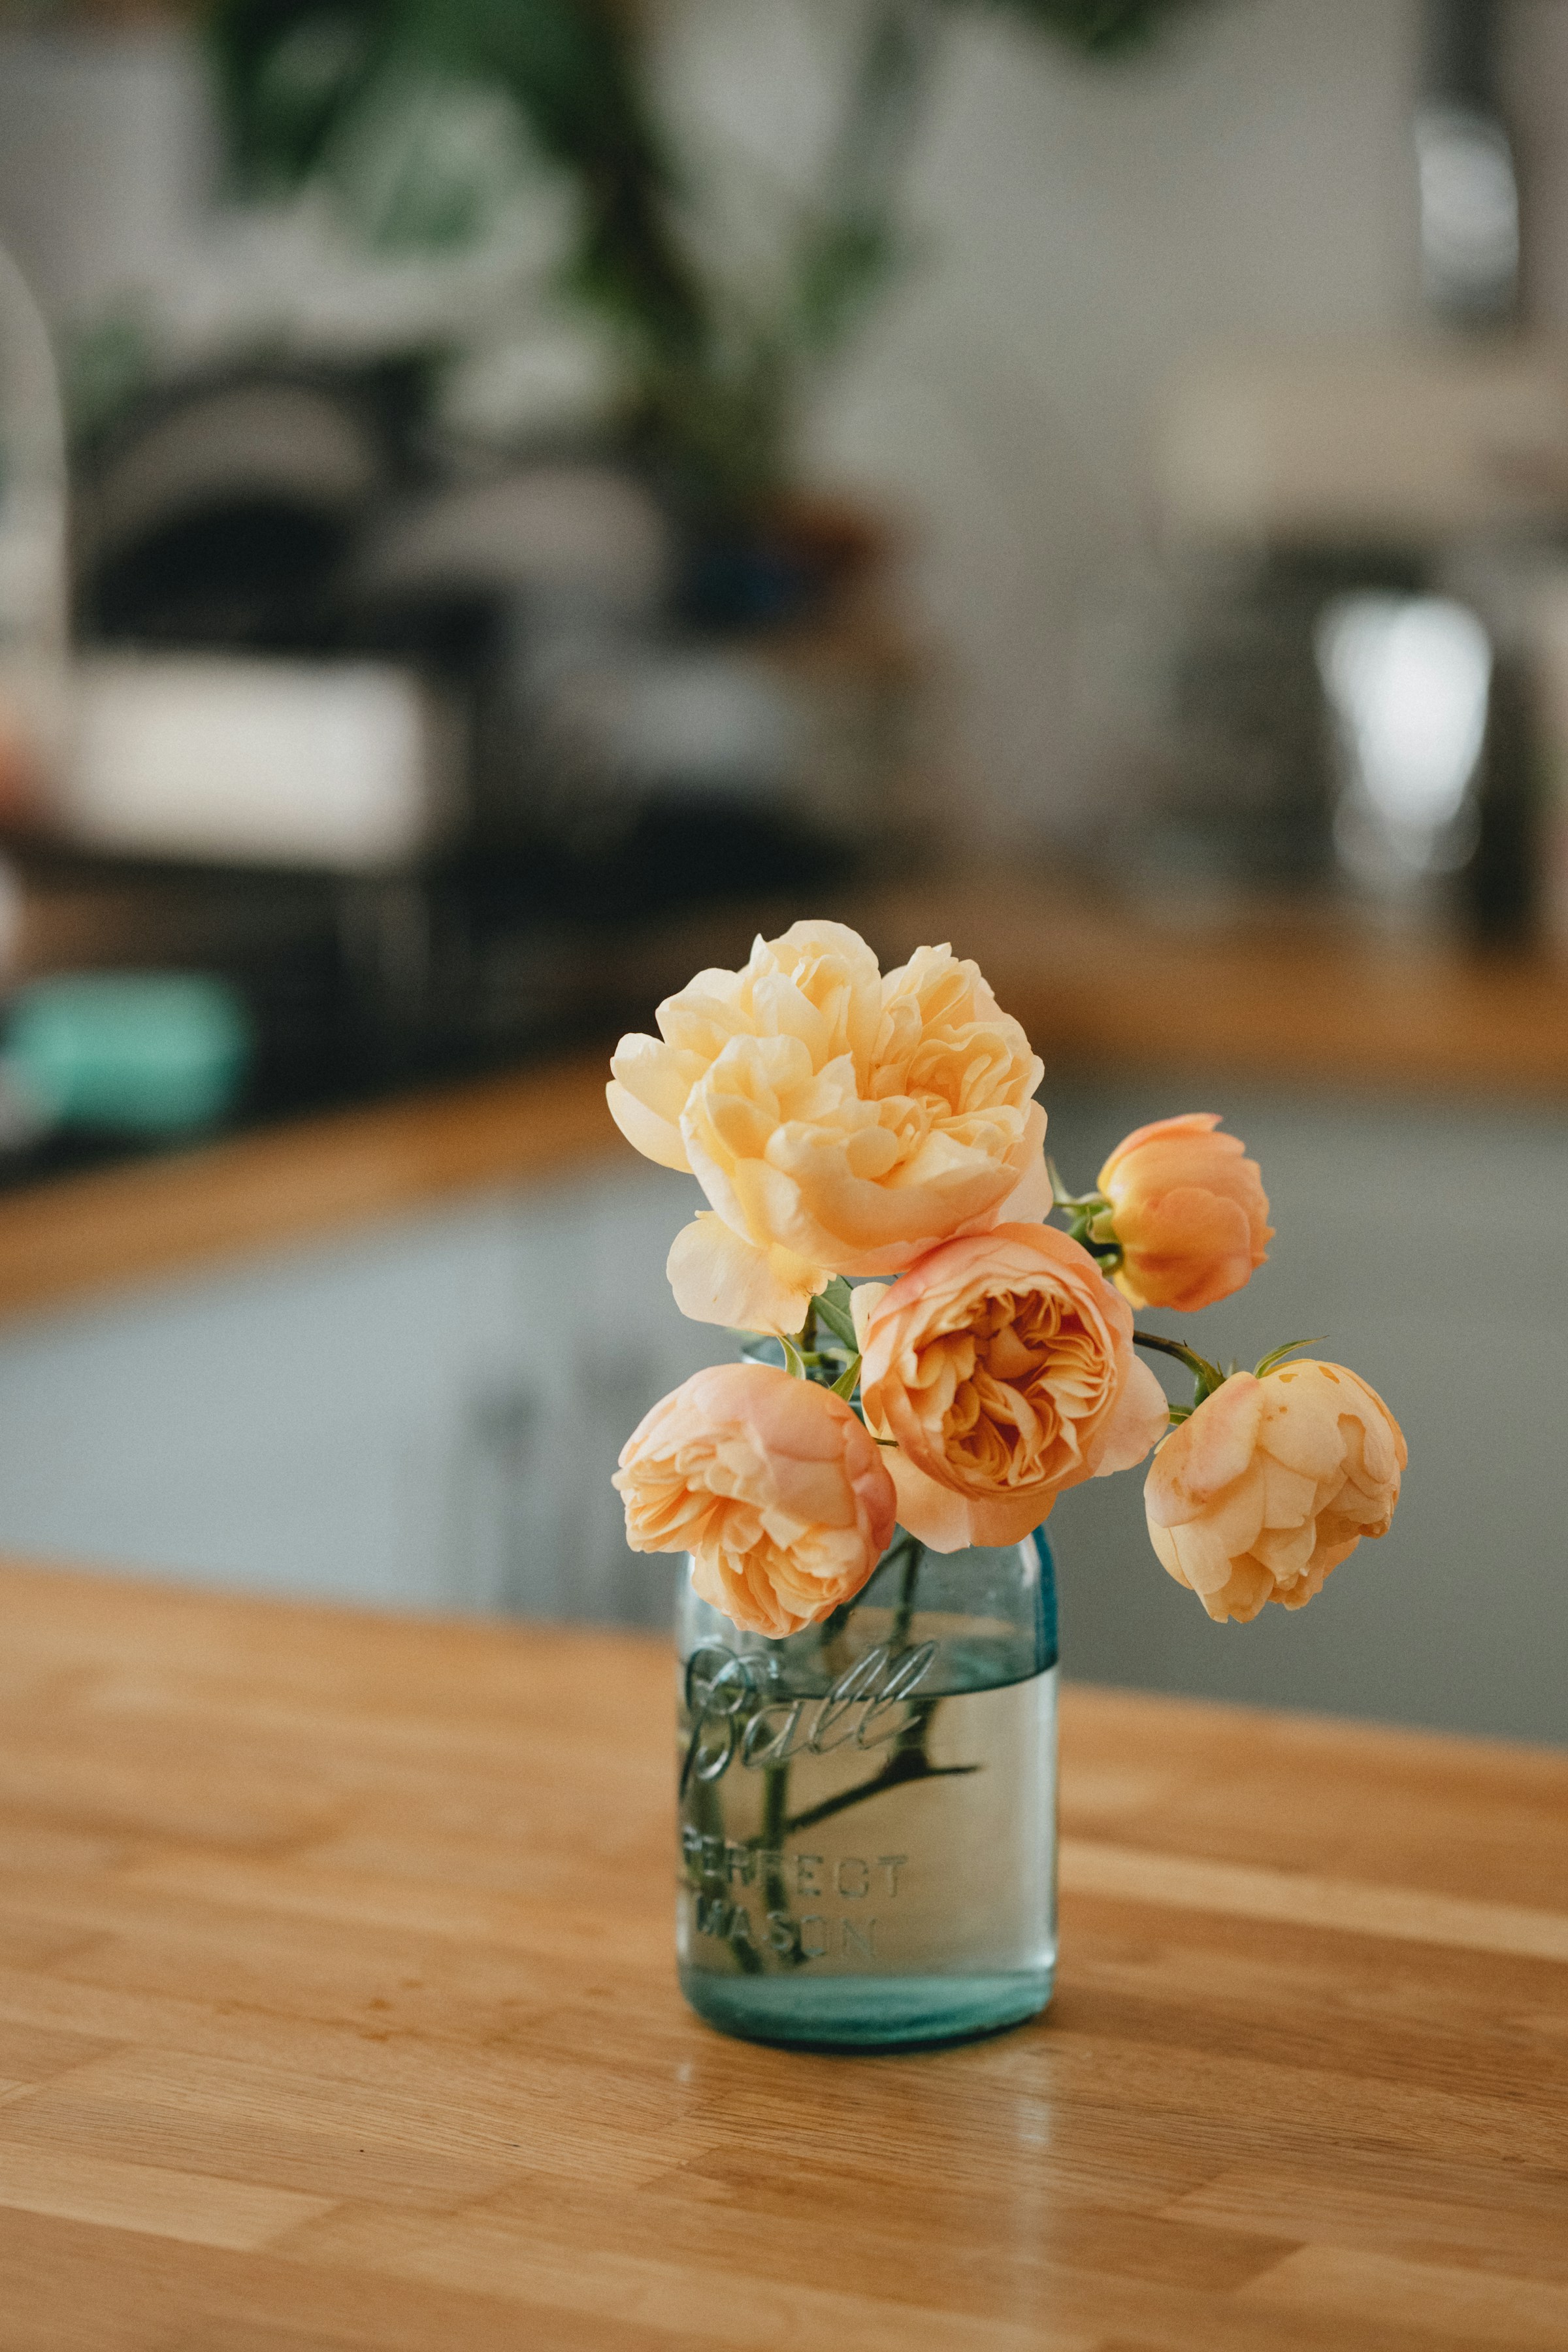 Vase mit Blumen | Quelle: Unsplash